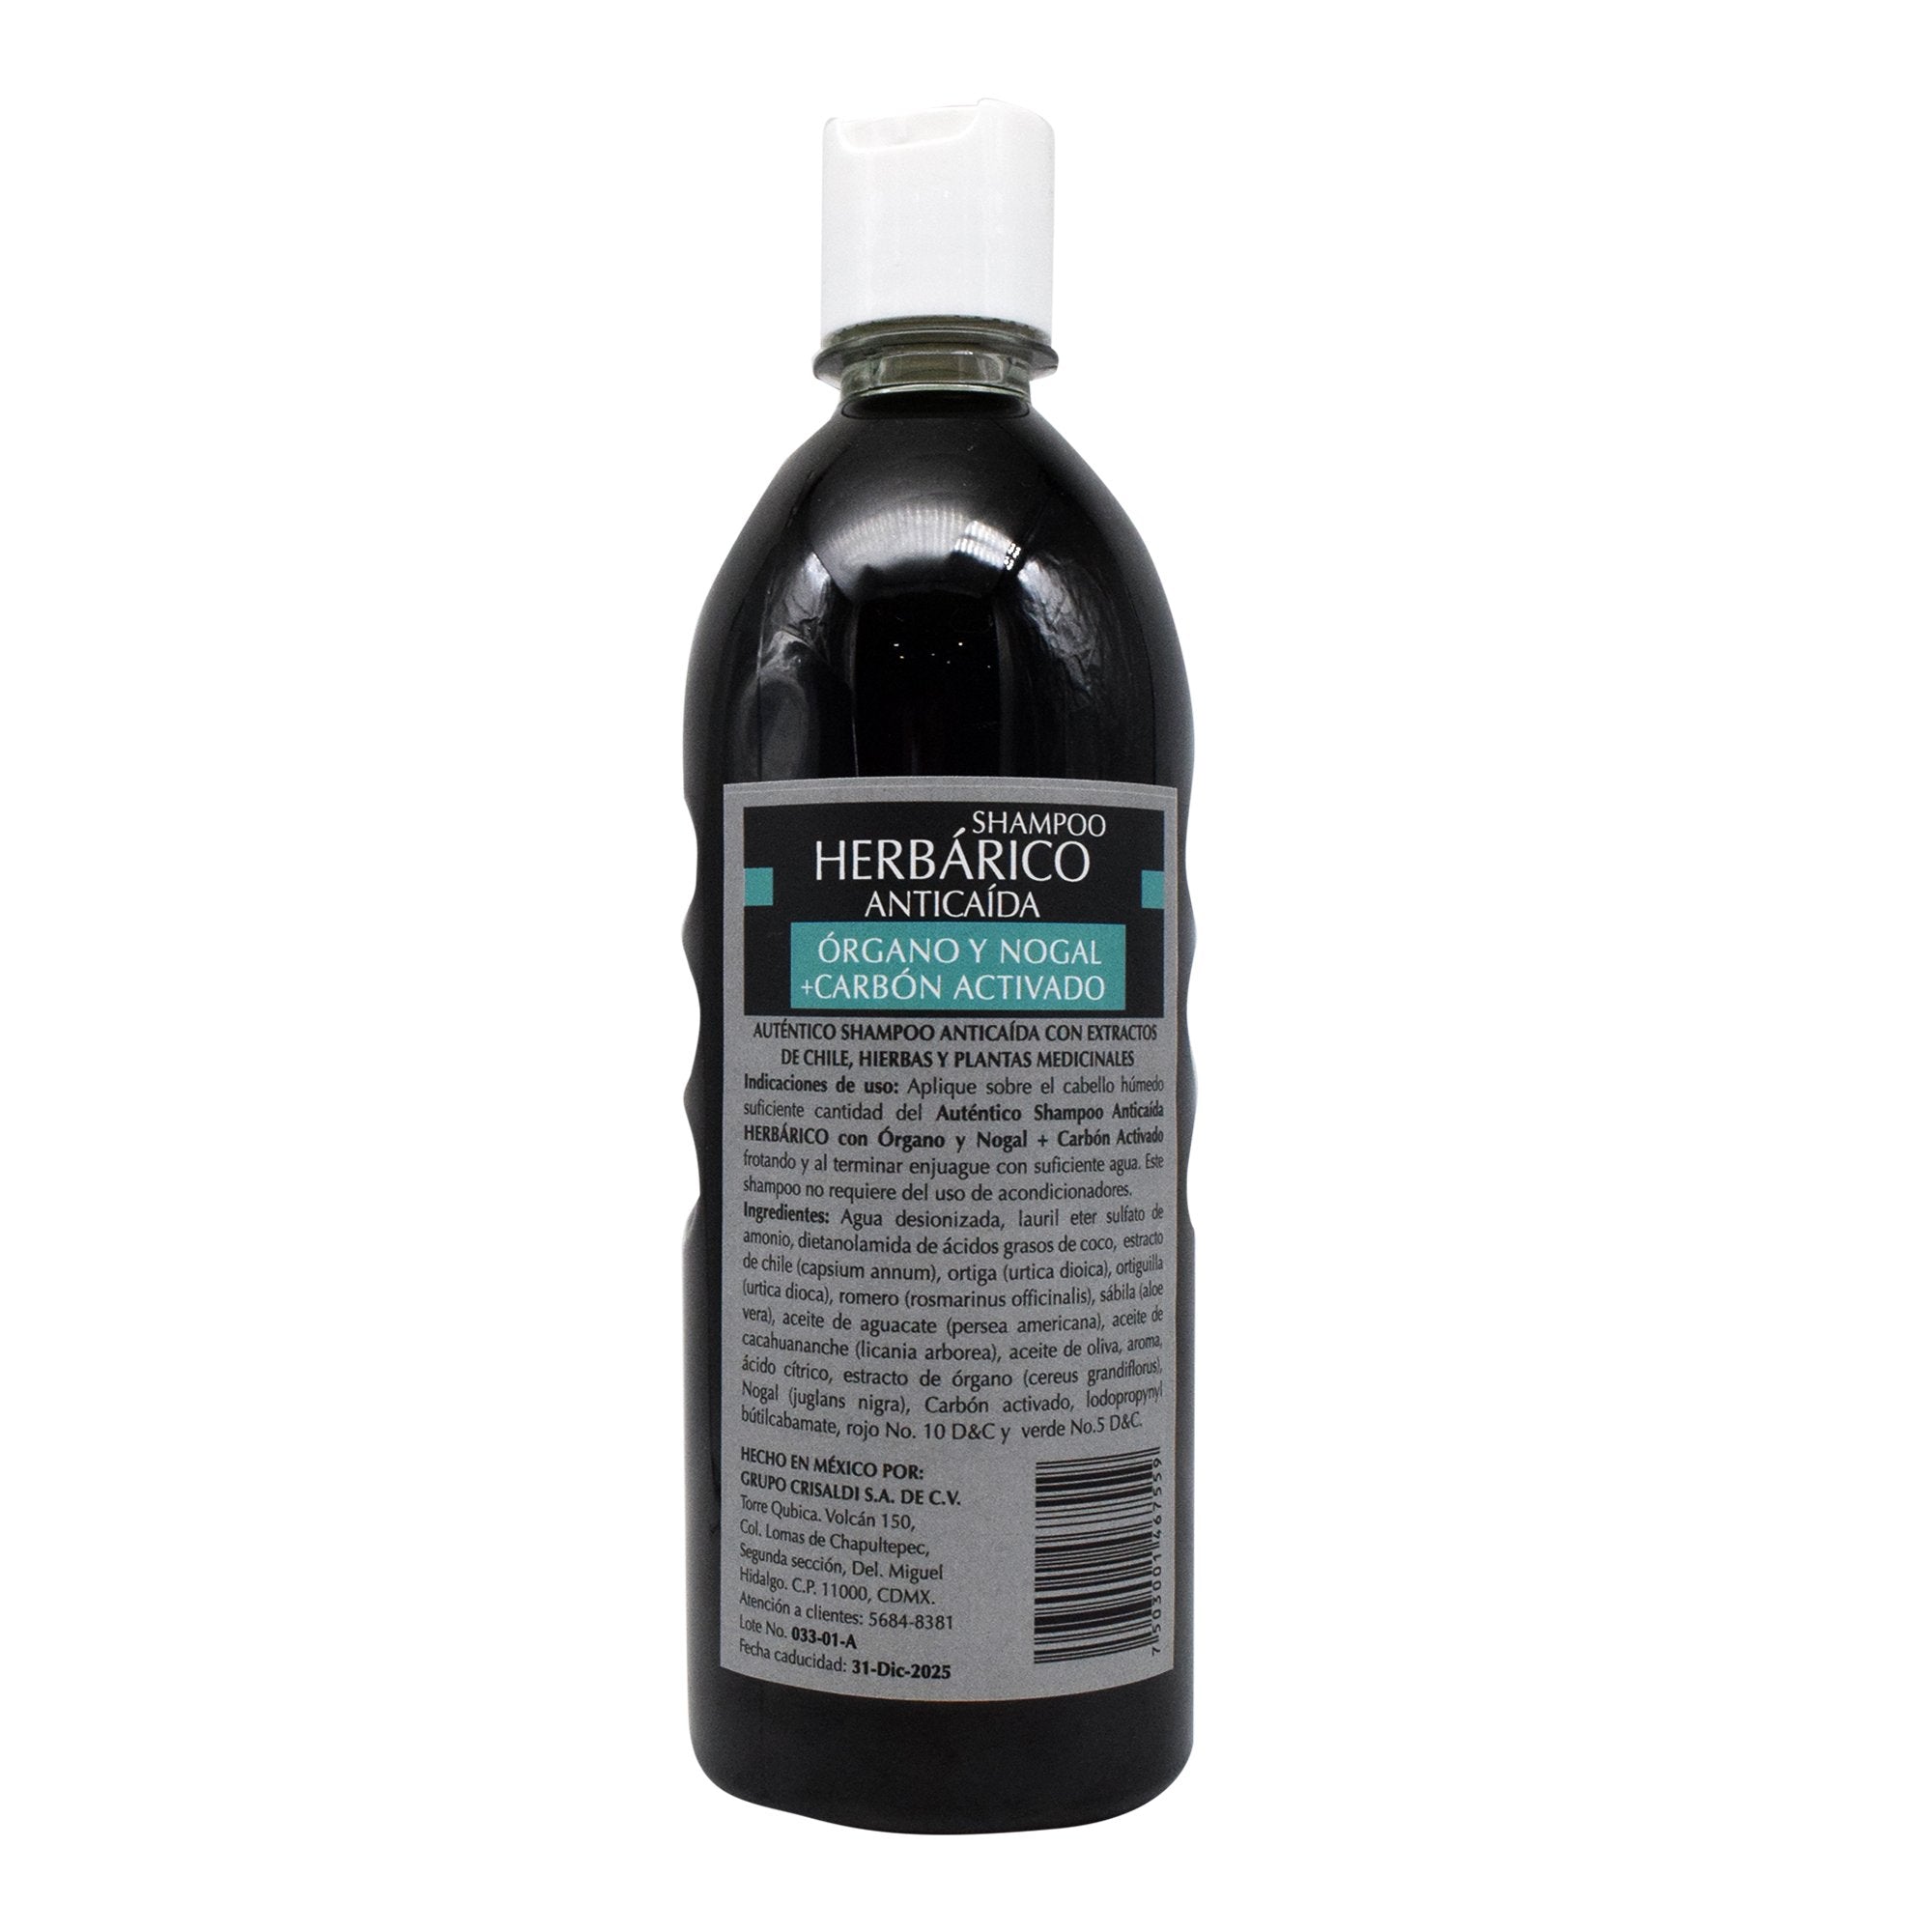 Shampoo anticaida con carbon activado 600 ml